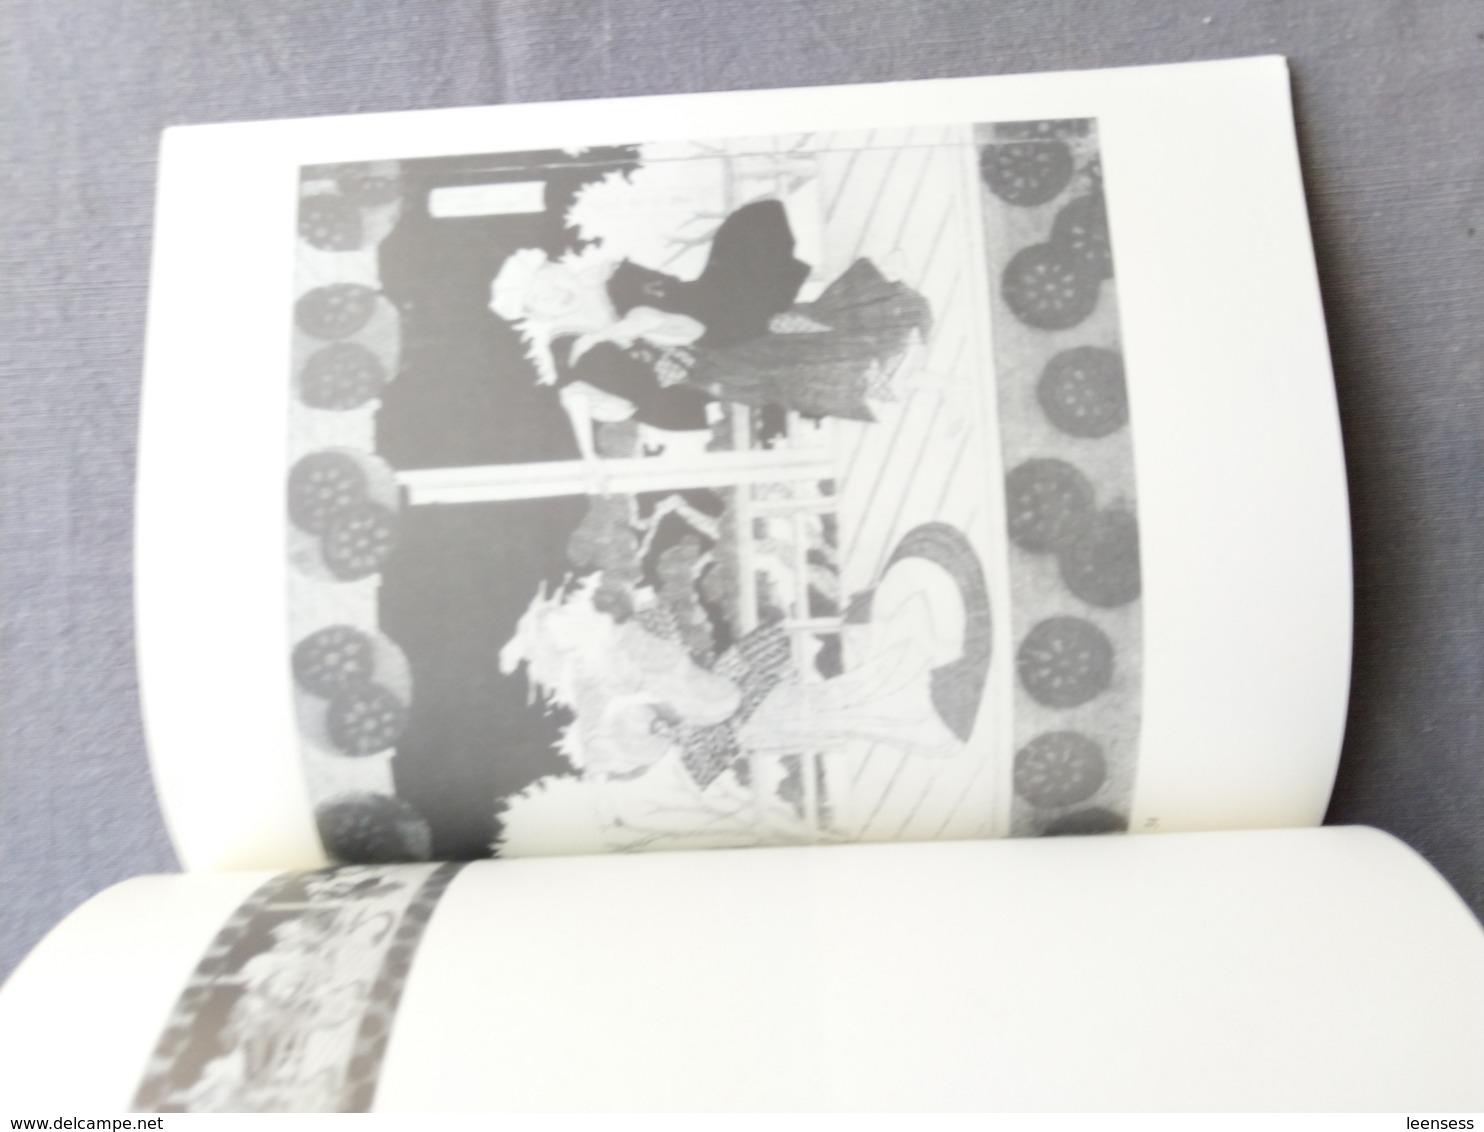 Koninklijke Bibliotheek Van Belgie; 18de & 19de- Eeuwse Japanse Prenten En Boeken; Catalogus Tentoonstelling. 1989. - History